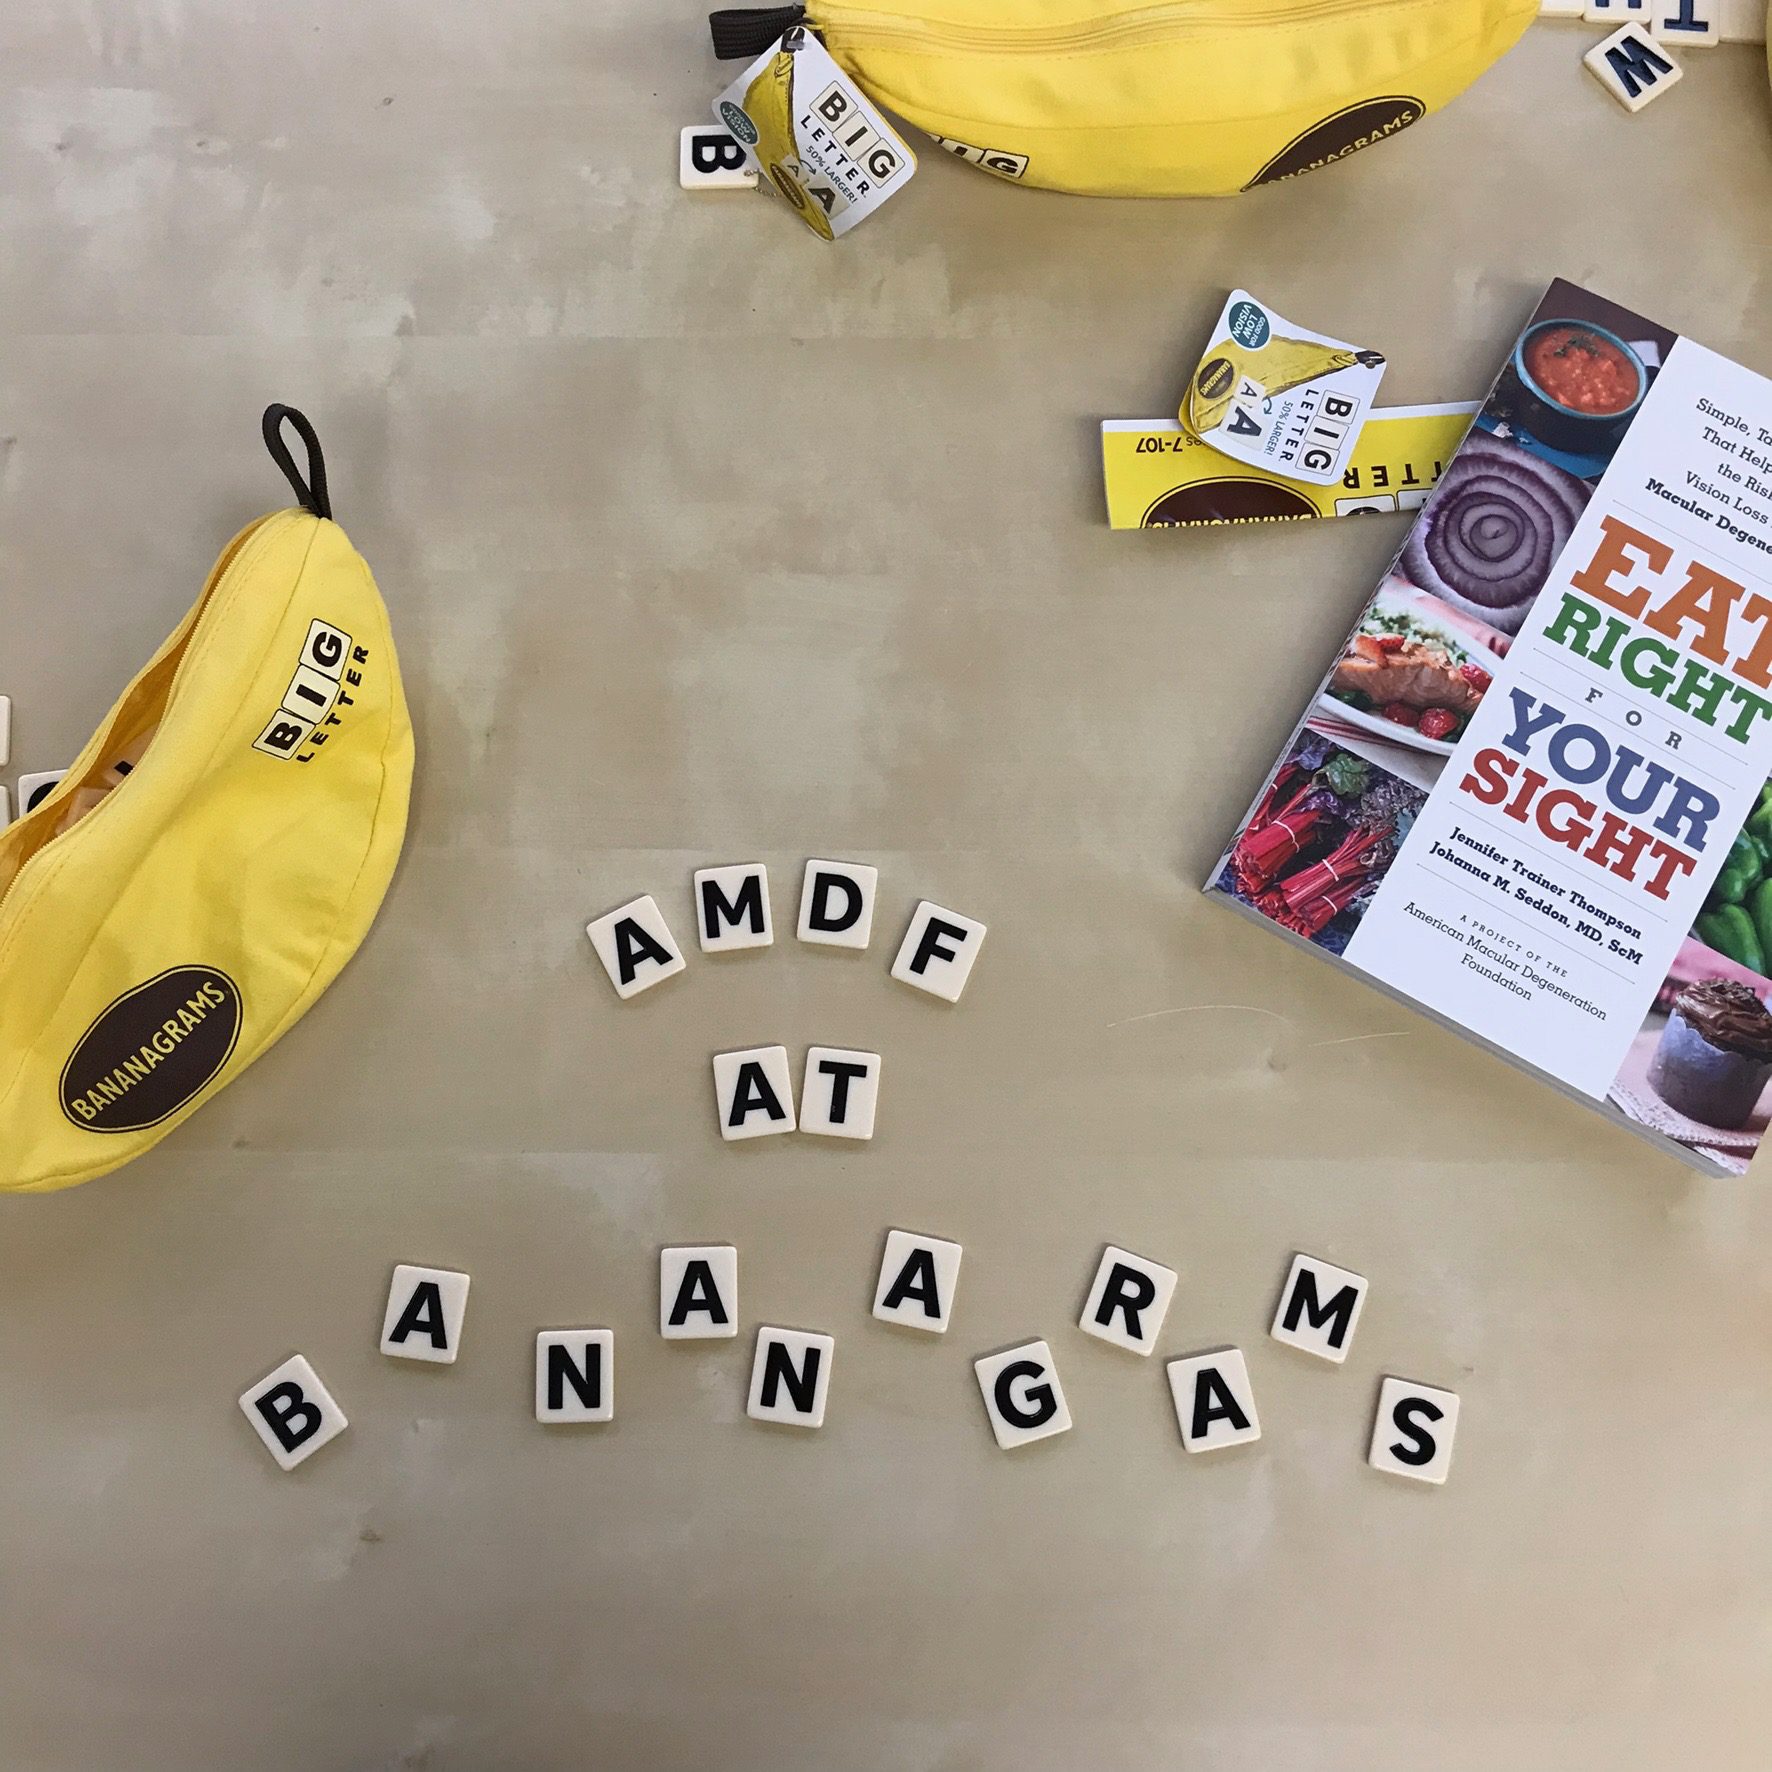 AMDF at Bananagrams